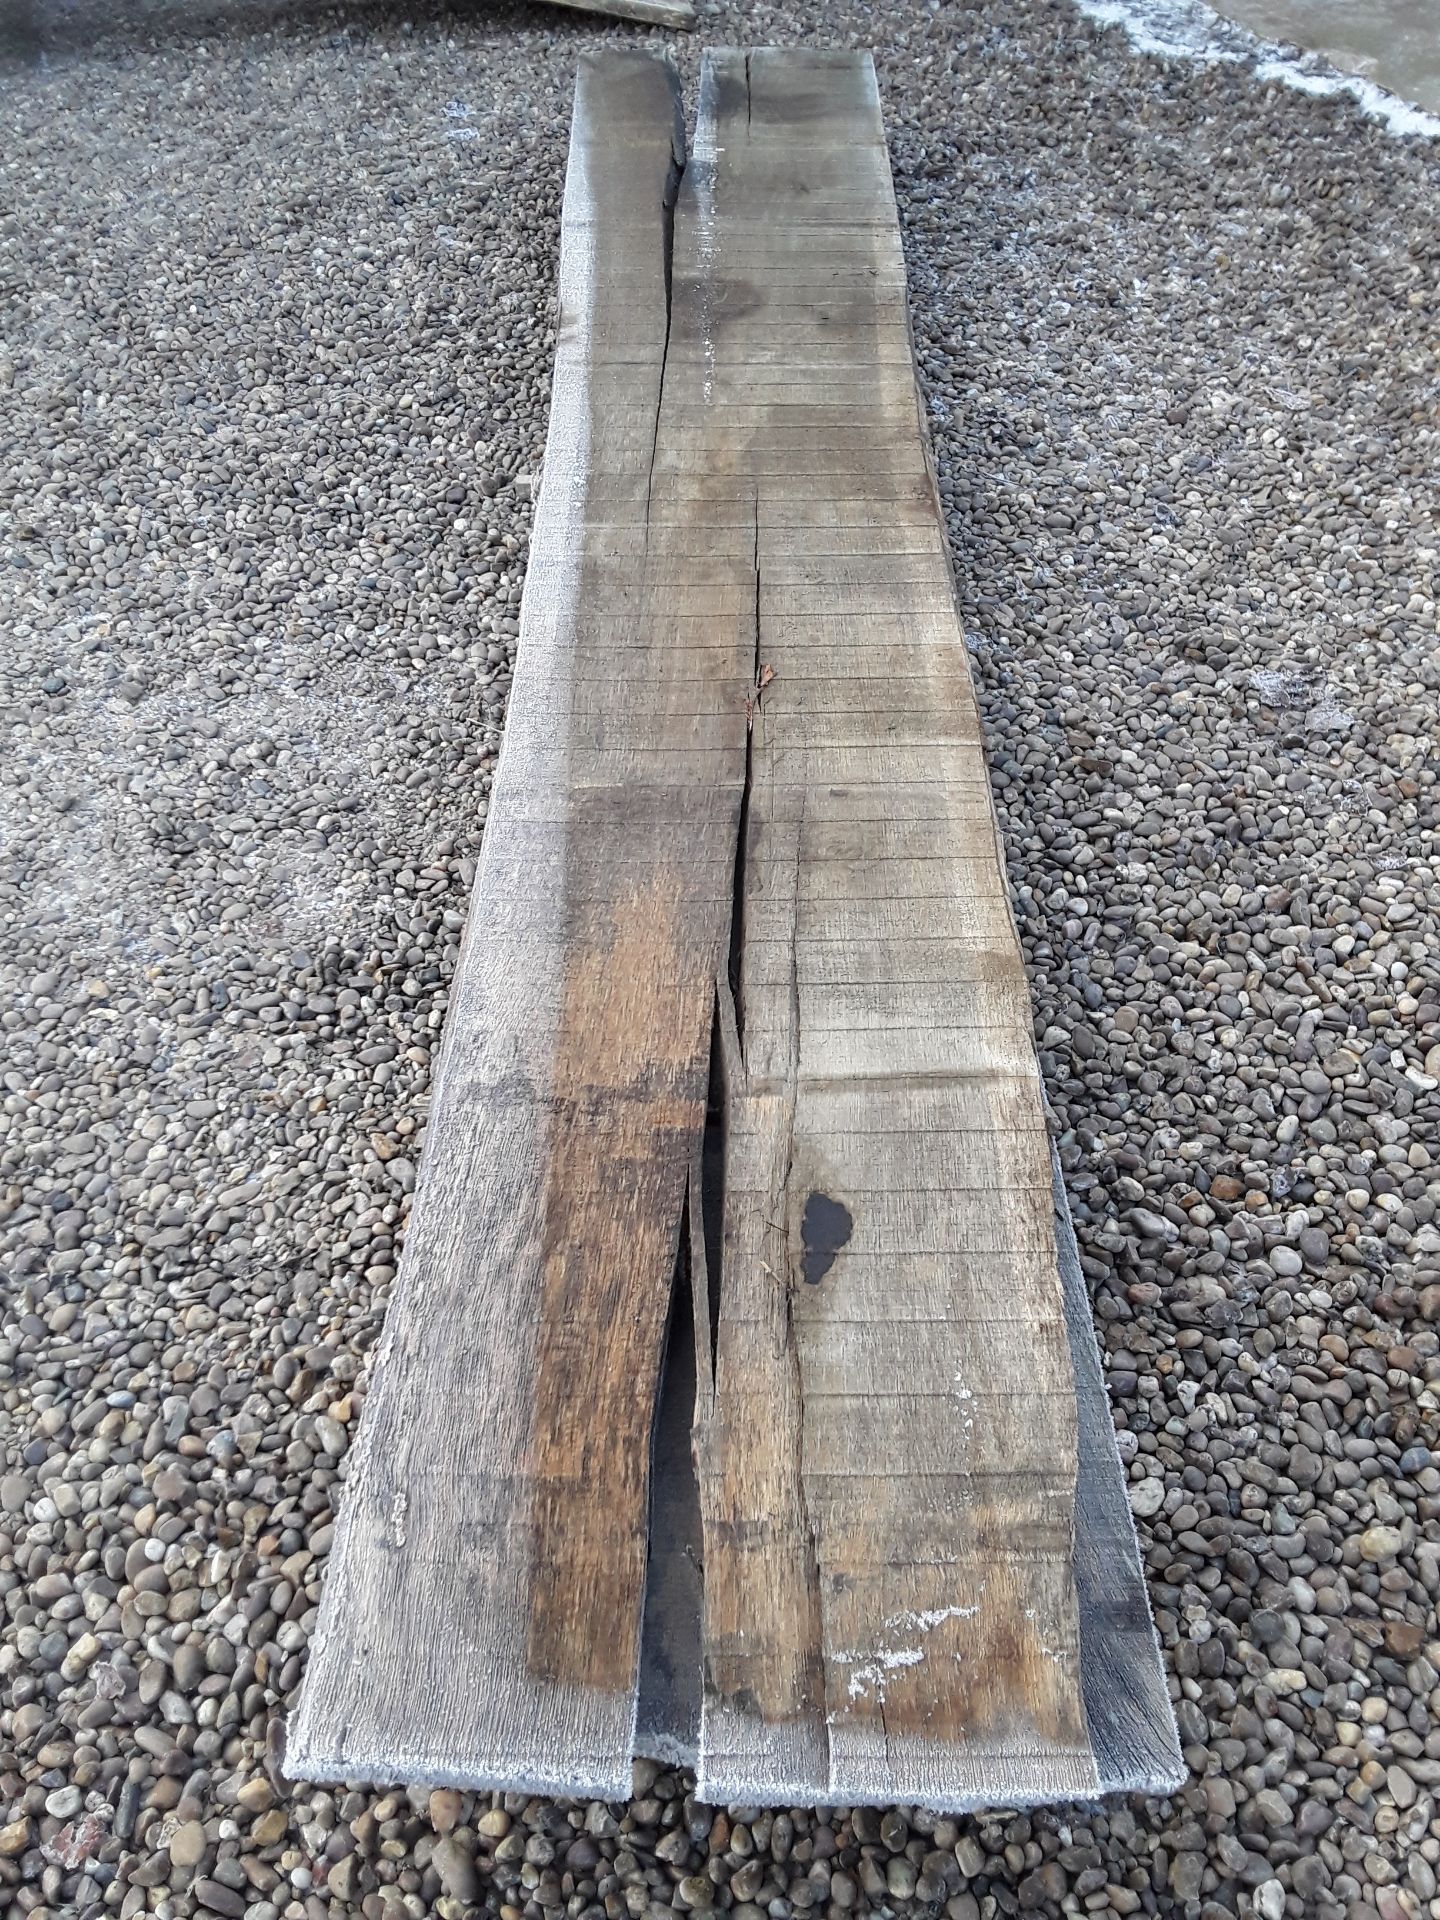 10 x Hardwood Timber Sawn Seasoned English Oak Waney Edge / Live Edge Boards/ Planks - Image 4 of 15